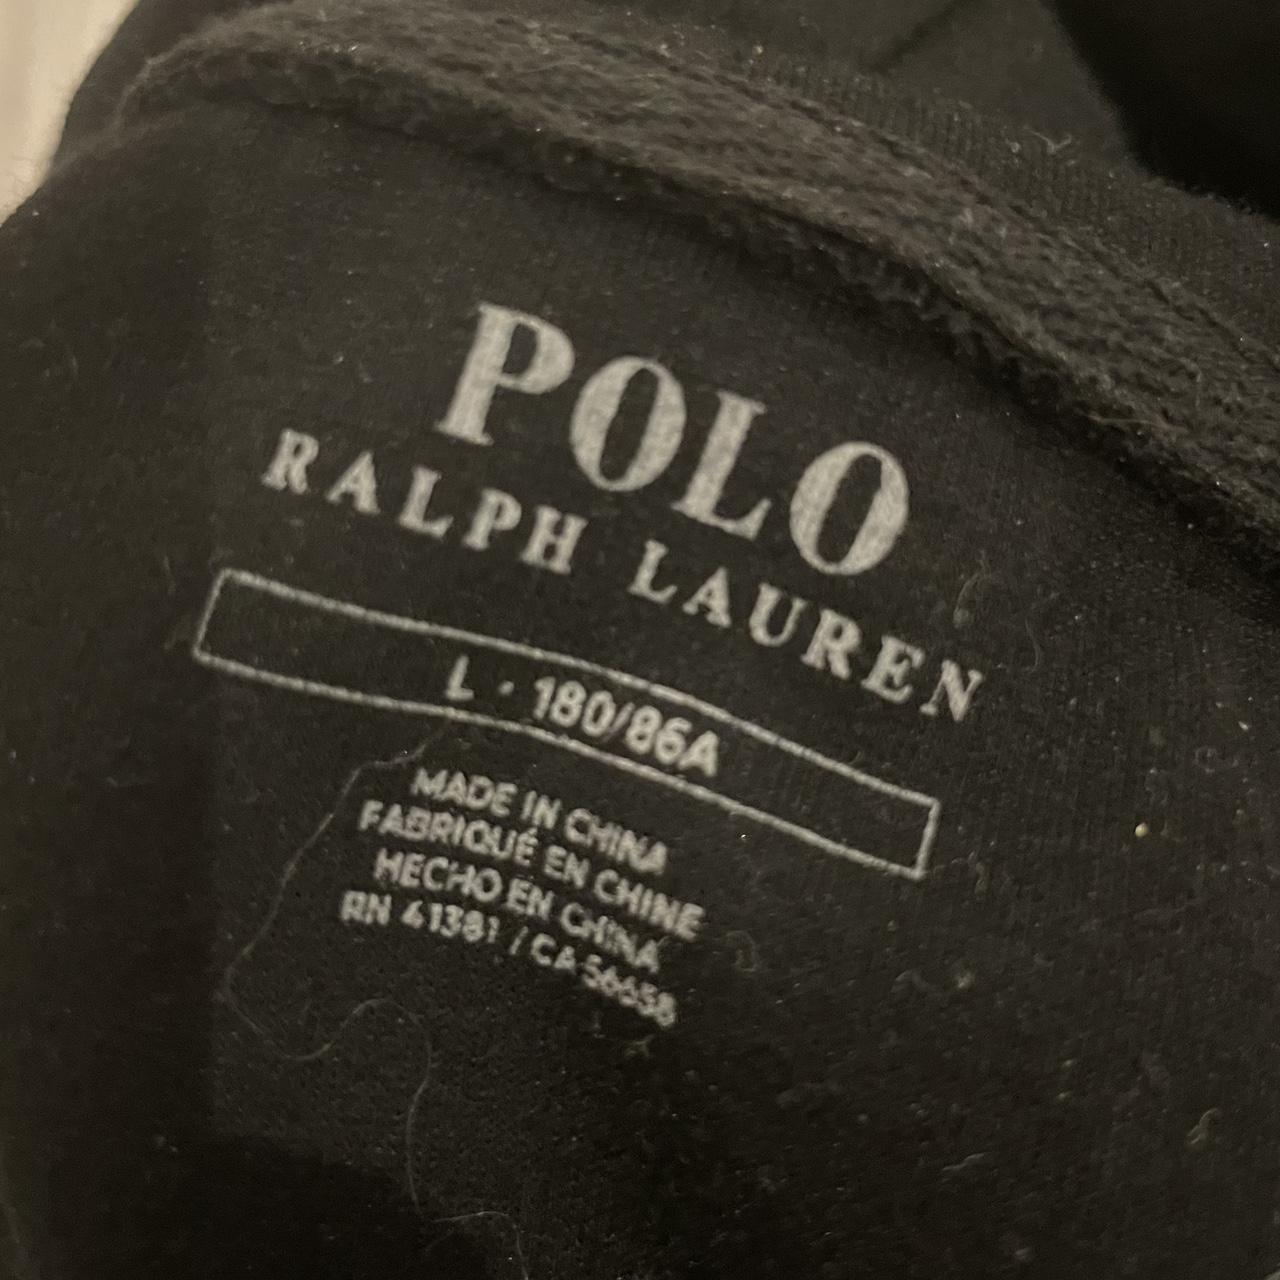 Black Ralph Lauren zip up large - Depop